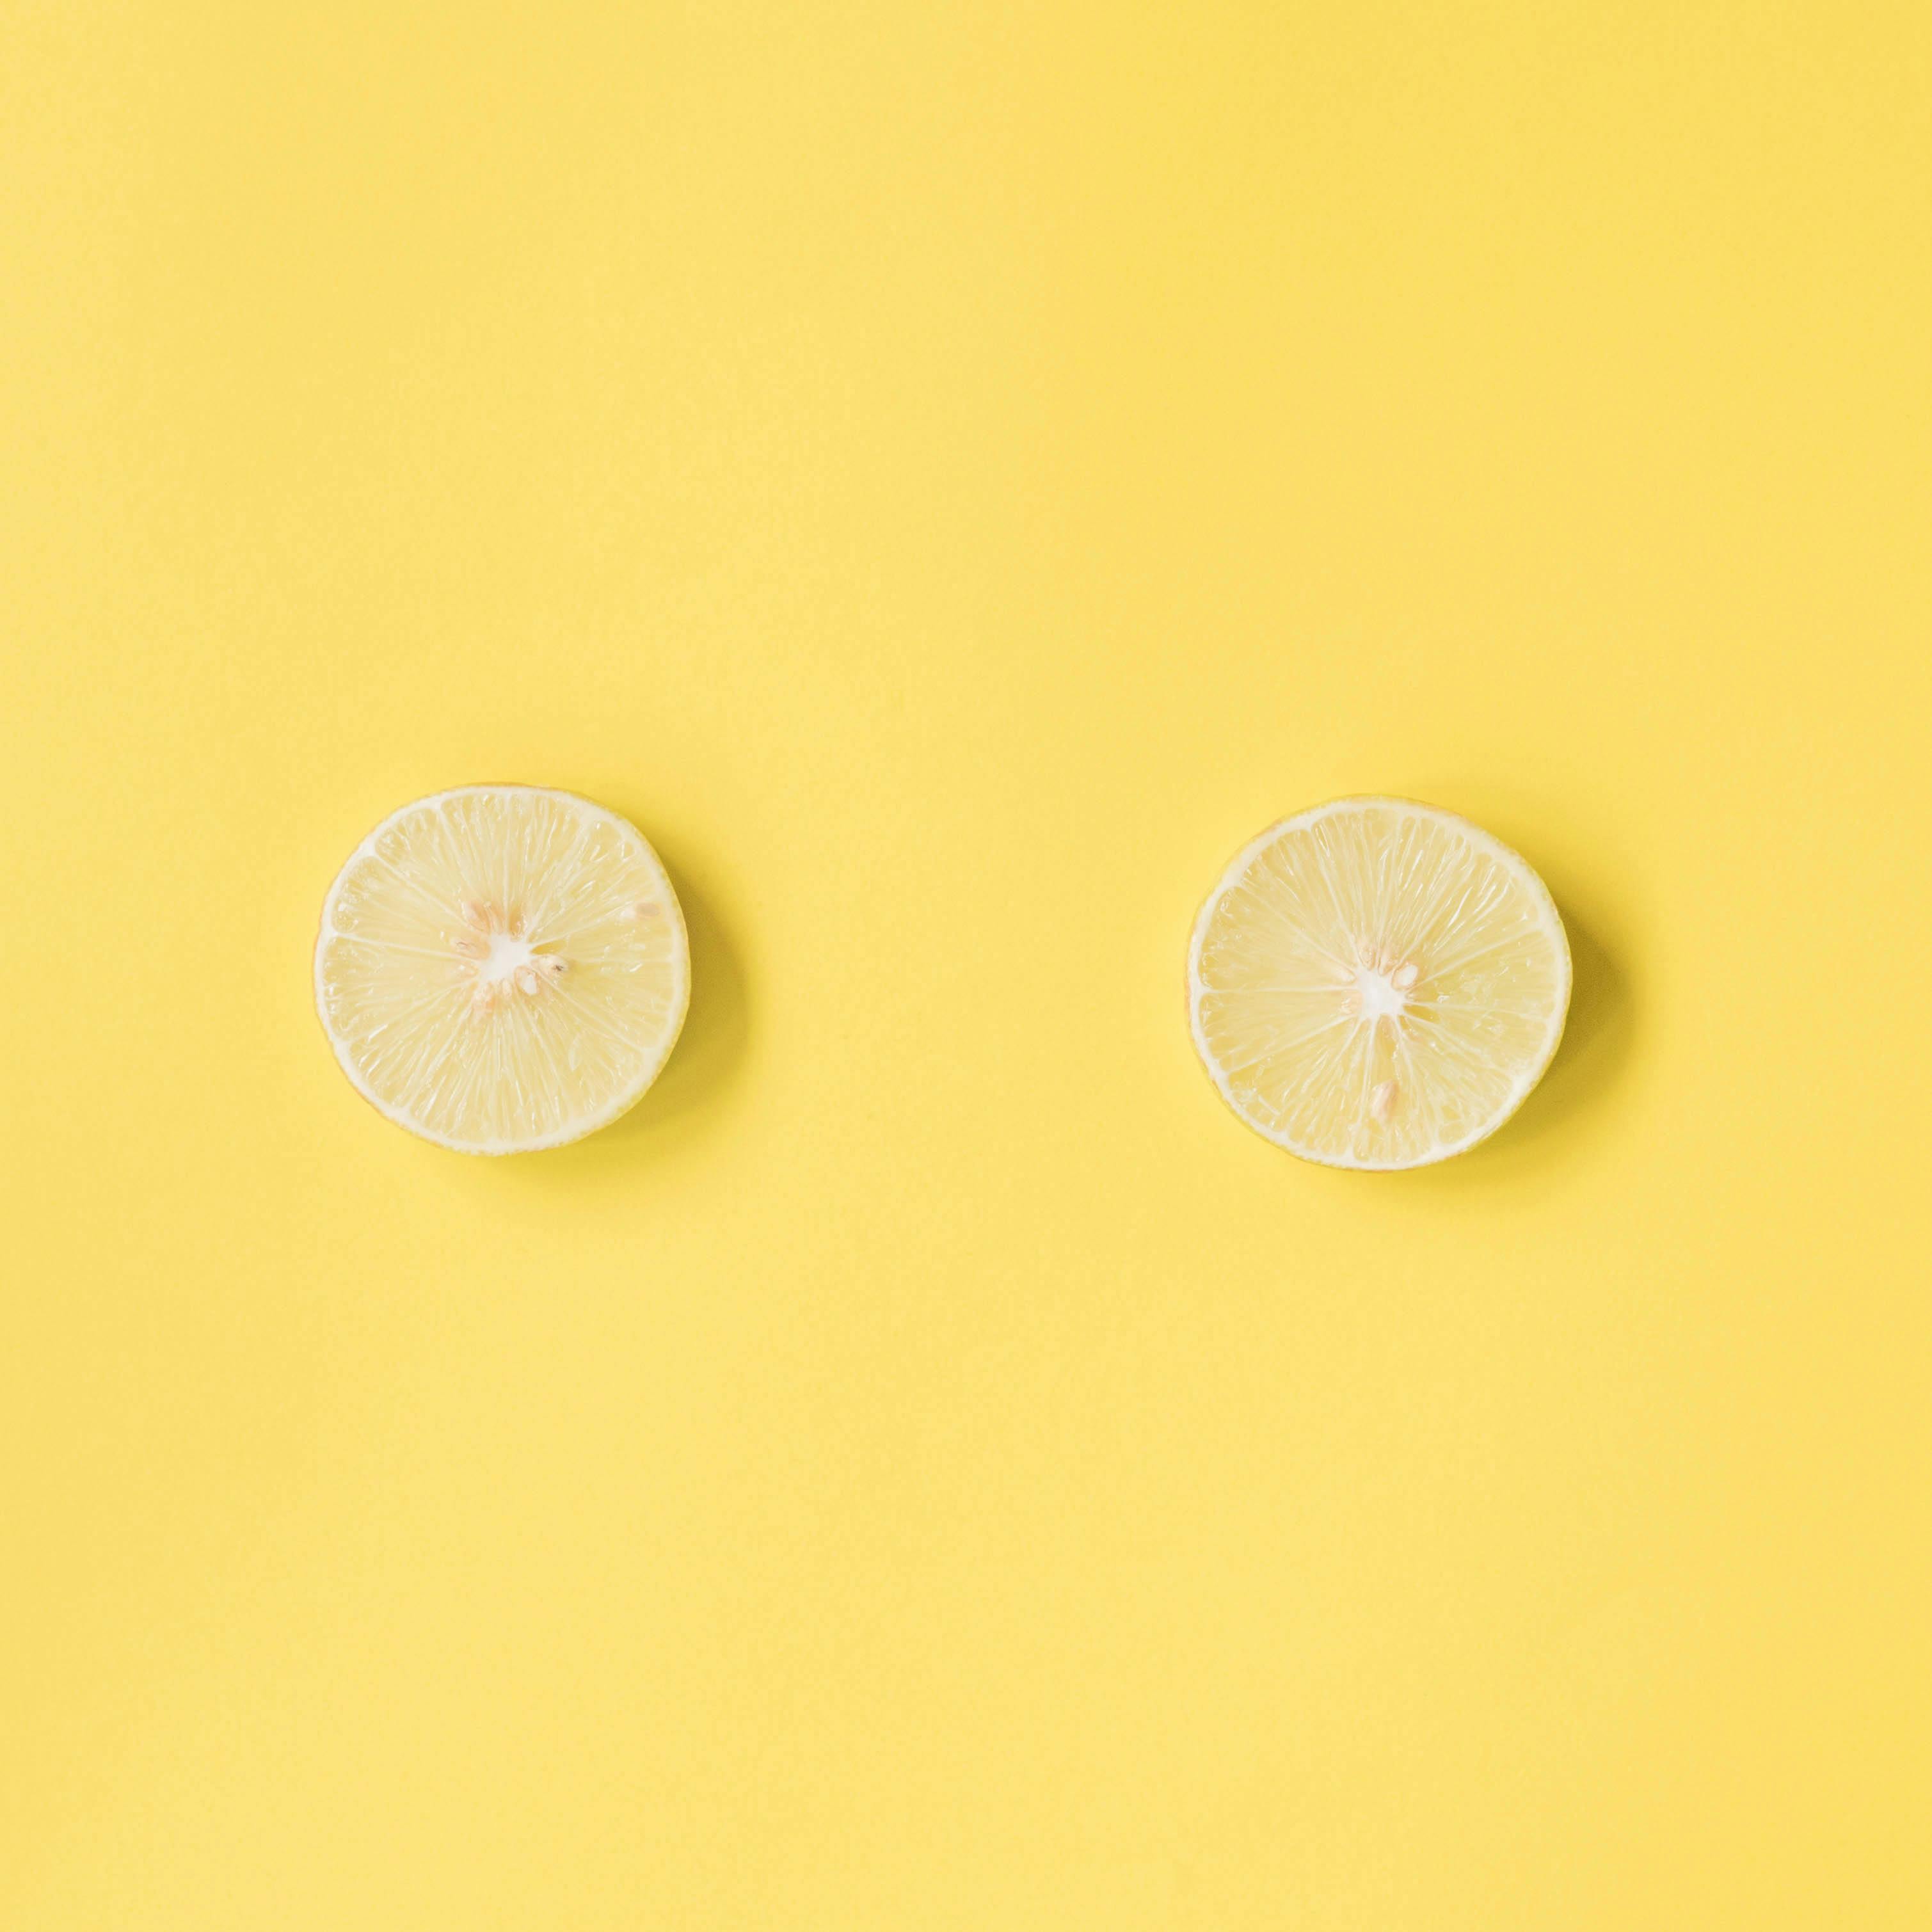 Fresh sliced lemon on pink background · Free Stock Photo